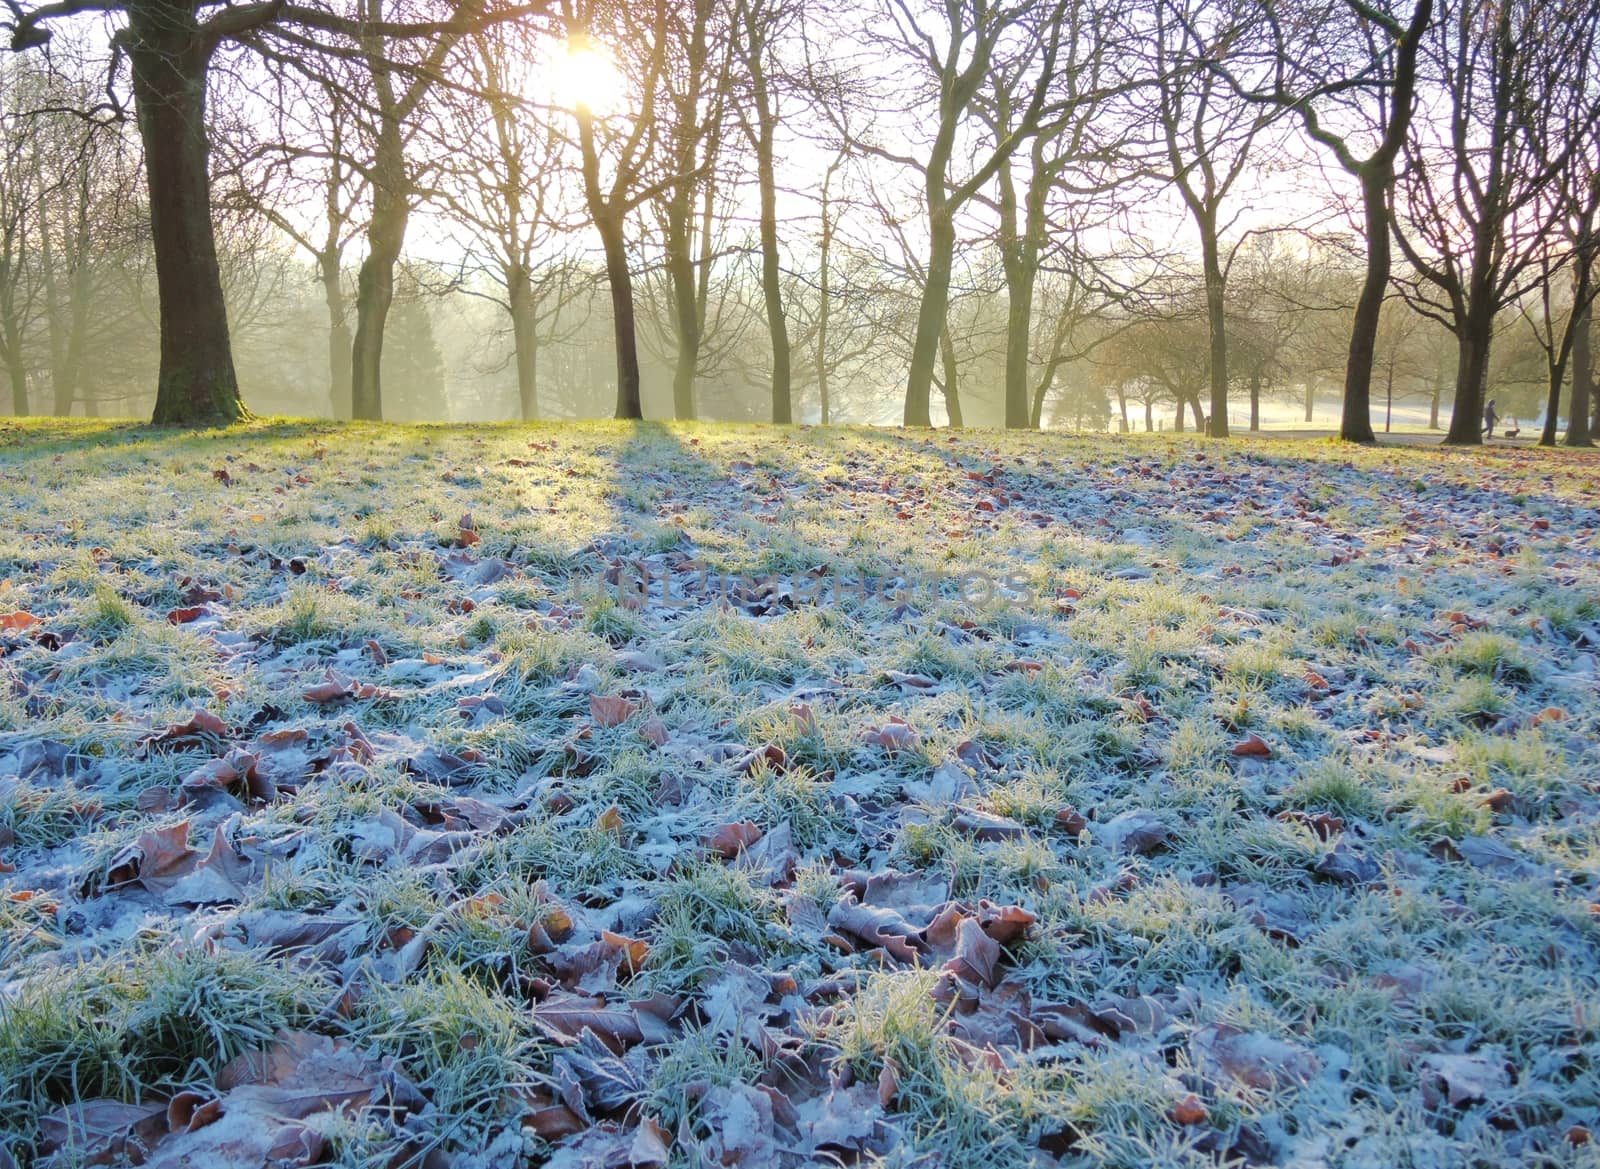 A Cold Frosty Landscape. by paulst